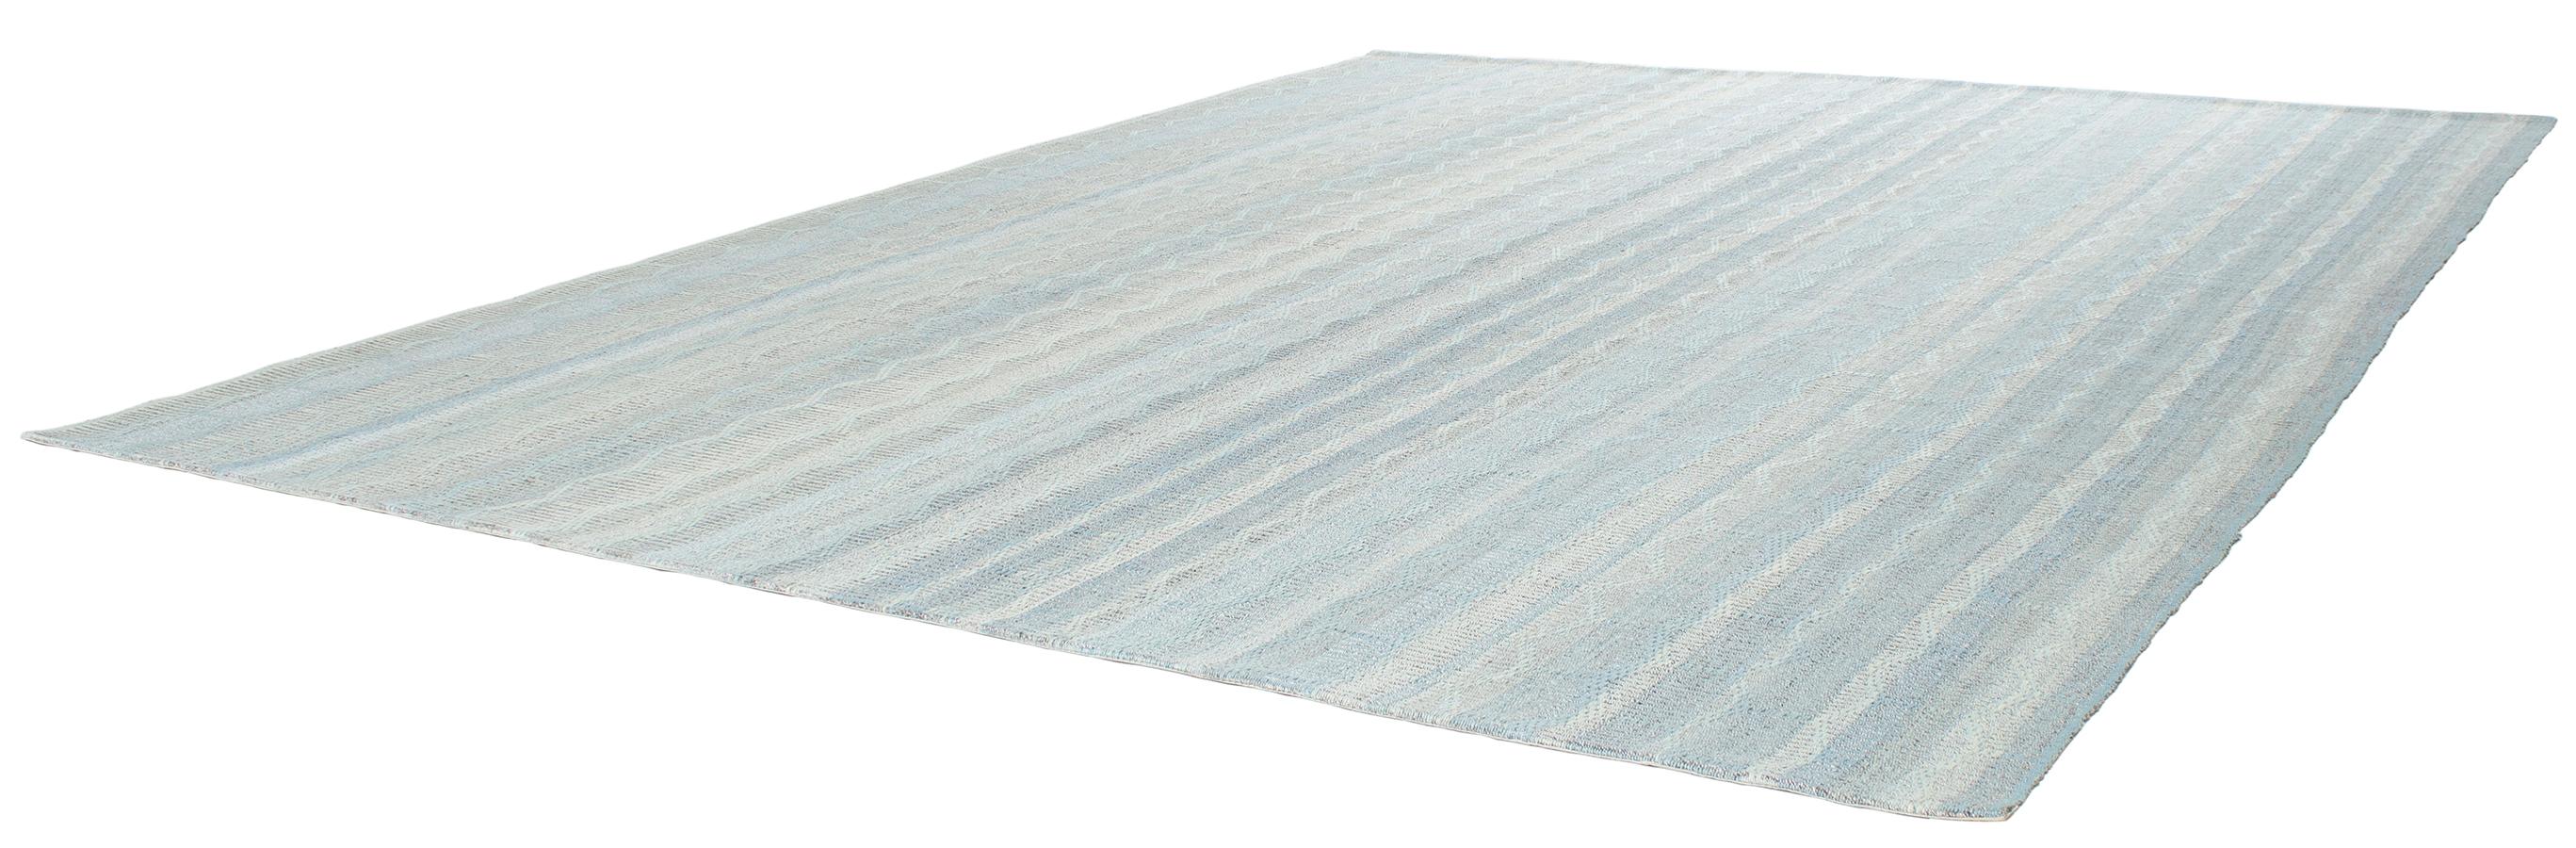 grey honeycomb rug